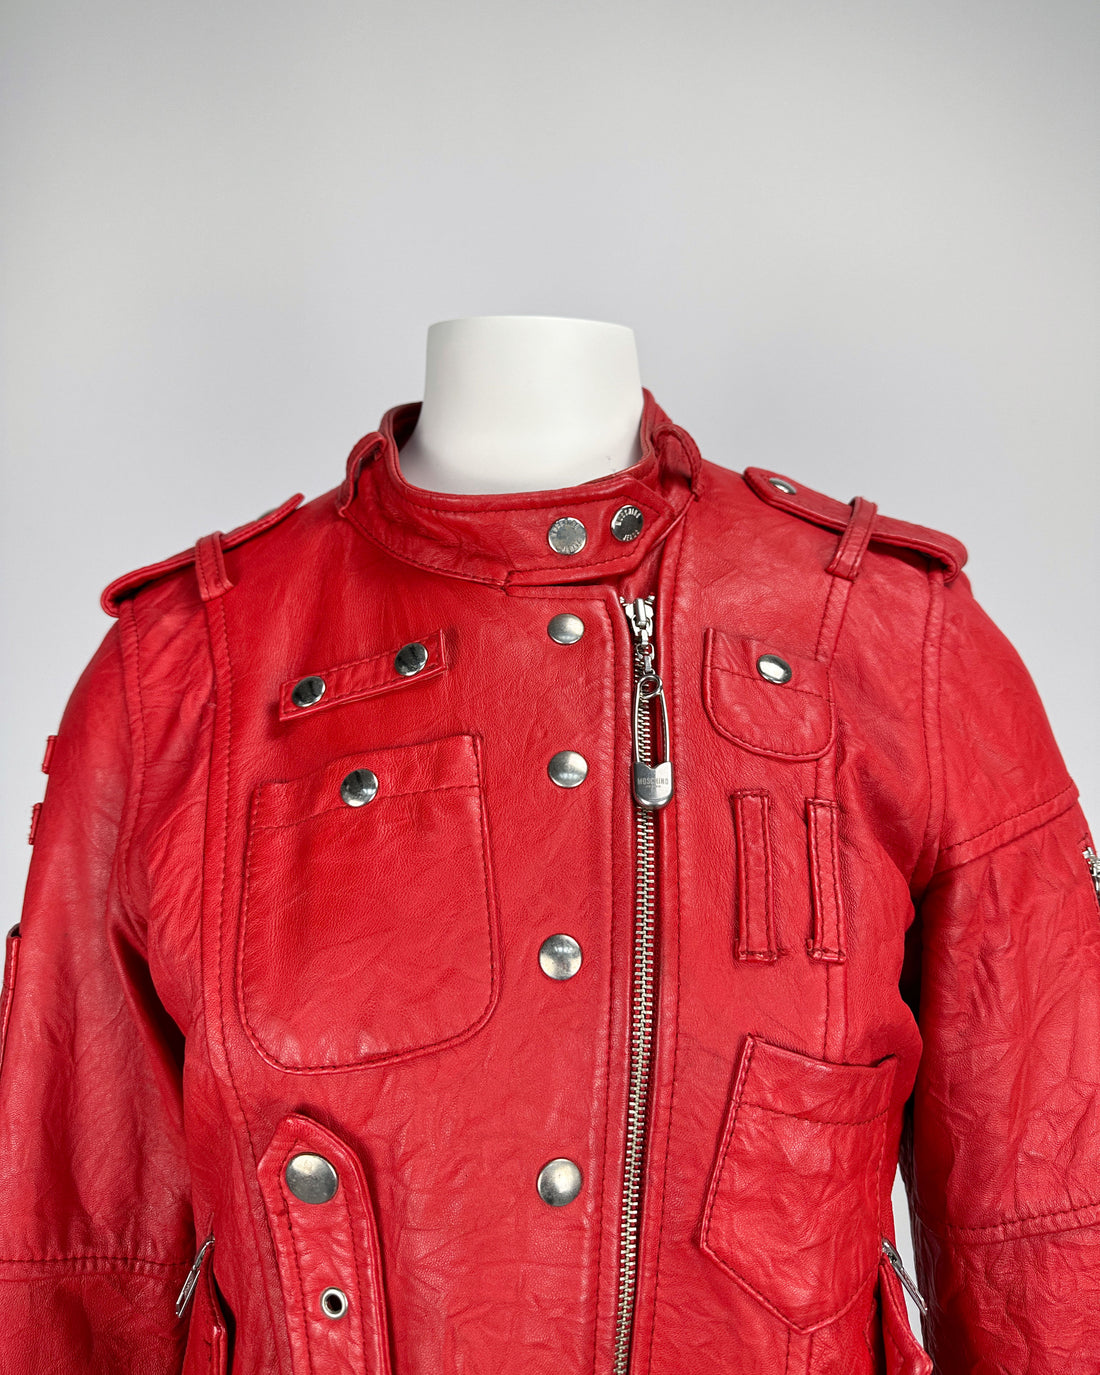 Moschino Bondage Red Leather Jacket  2000's